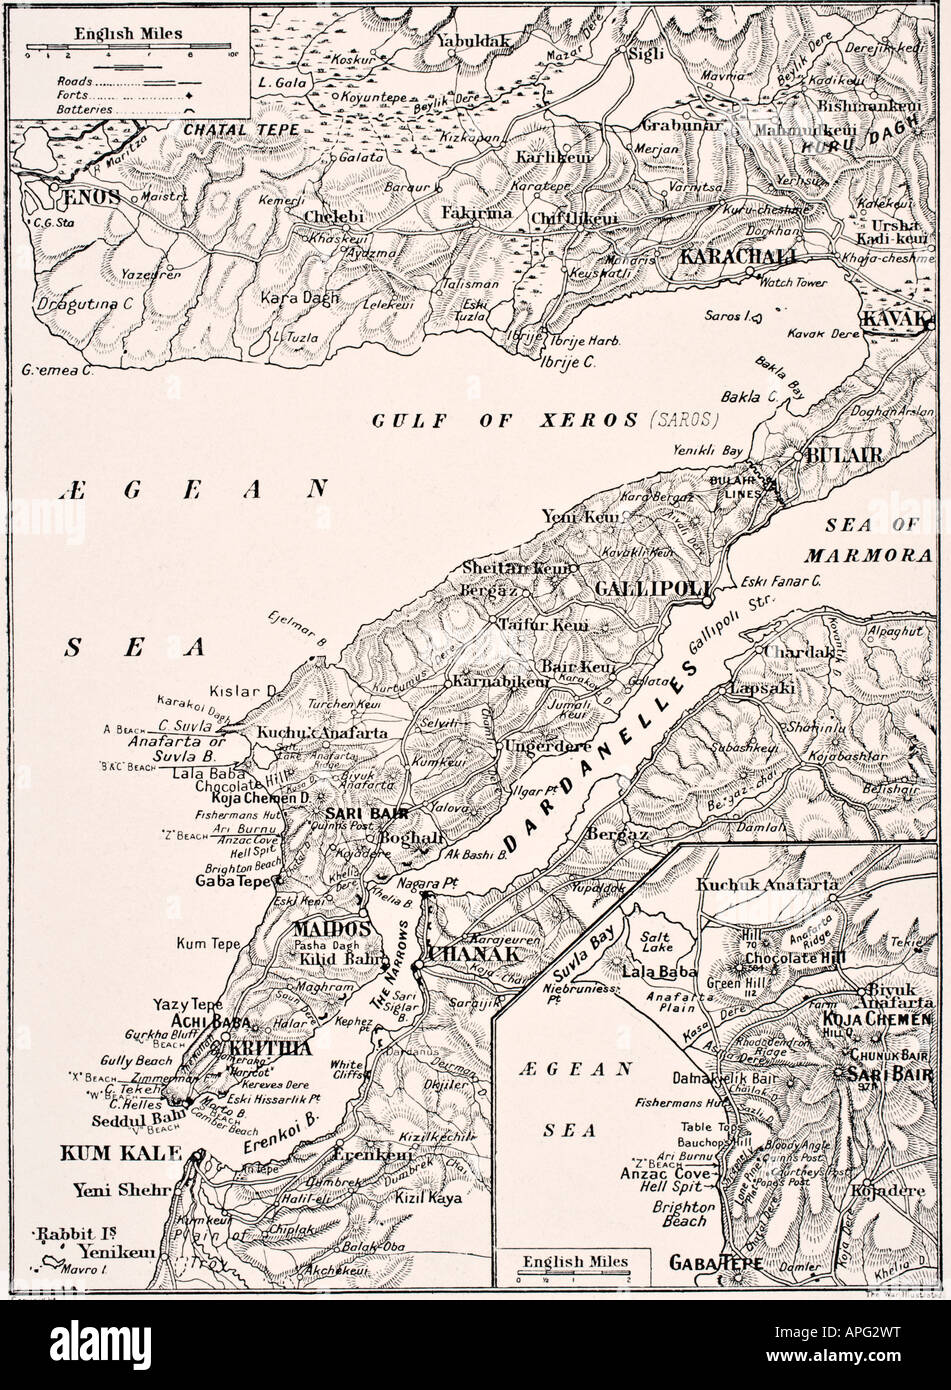 Mappa dettagliata della Penisola di Gallipoli e delle Dardanelli, Turchia nel 1915 che mostra le spiagge di sbarco britanniche e alleate. Foto Stock